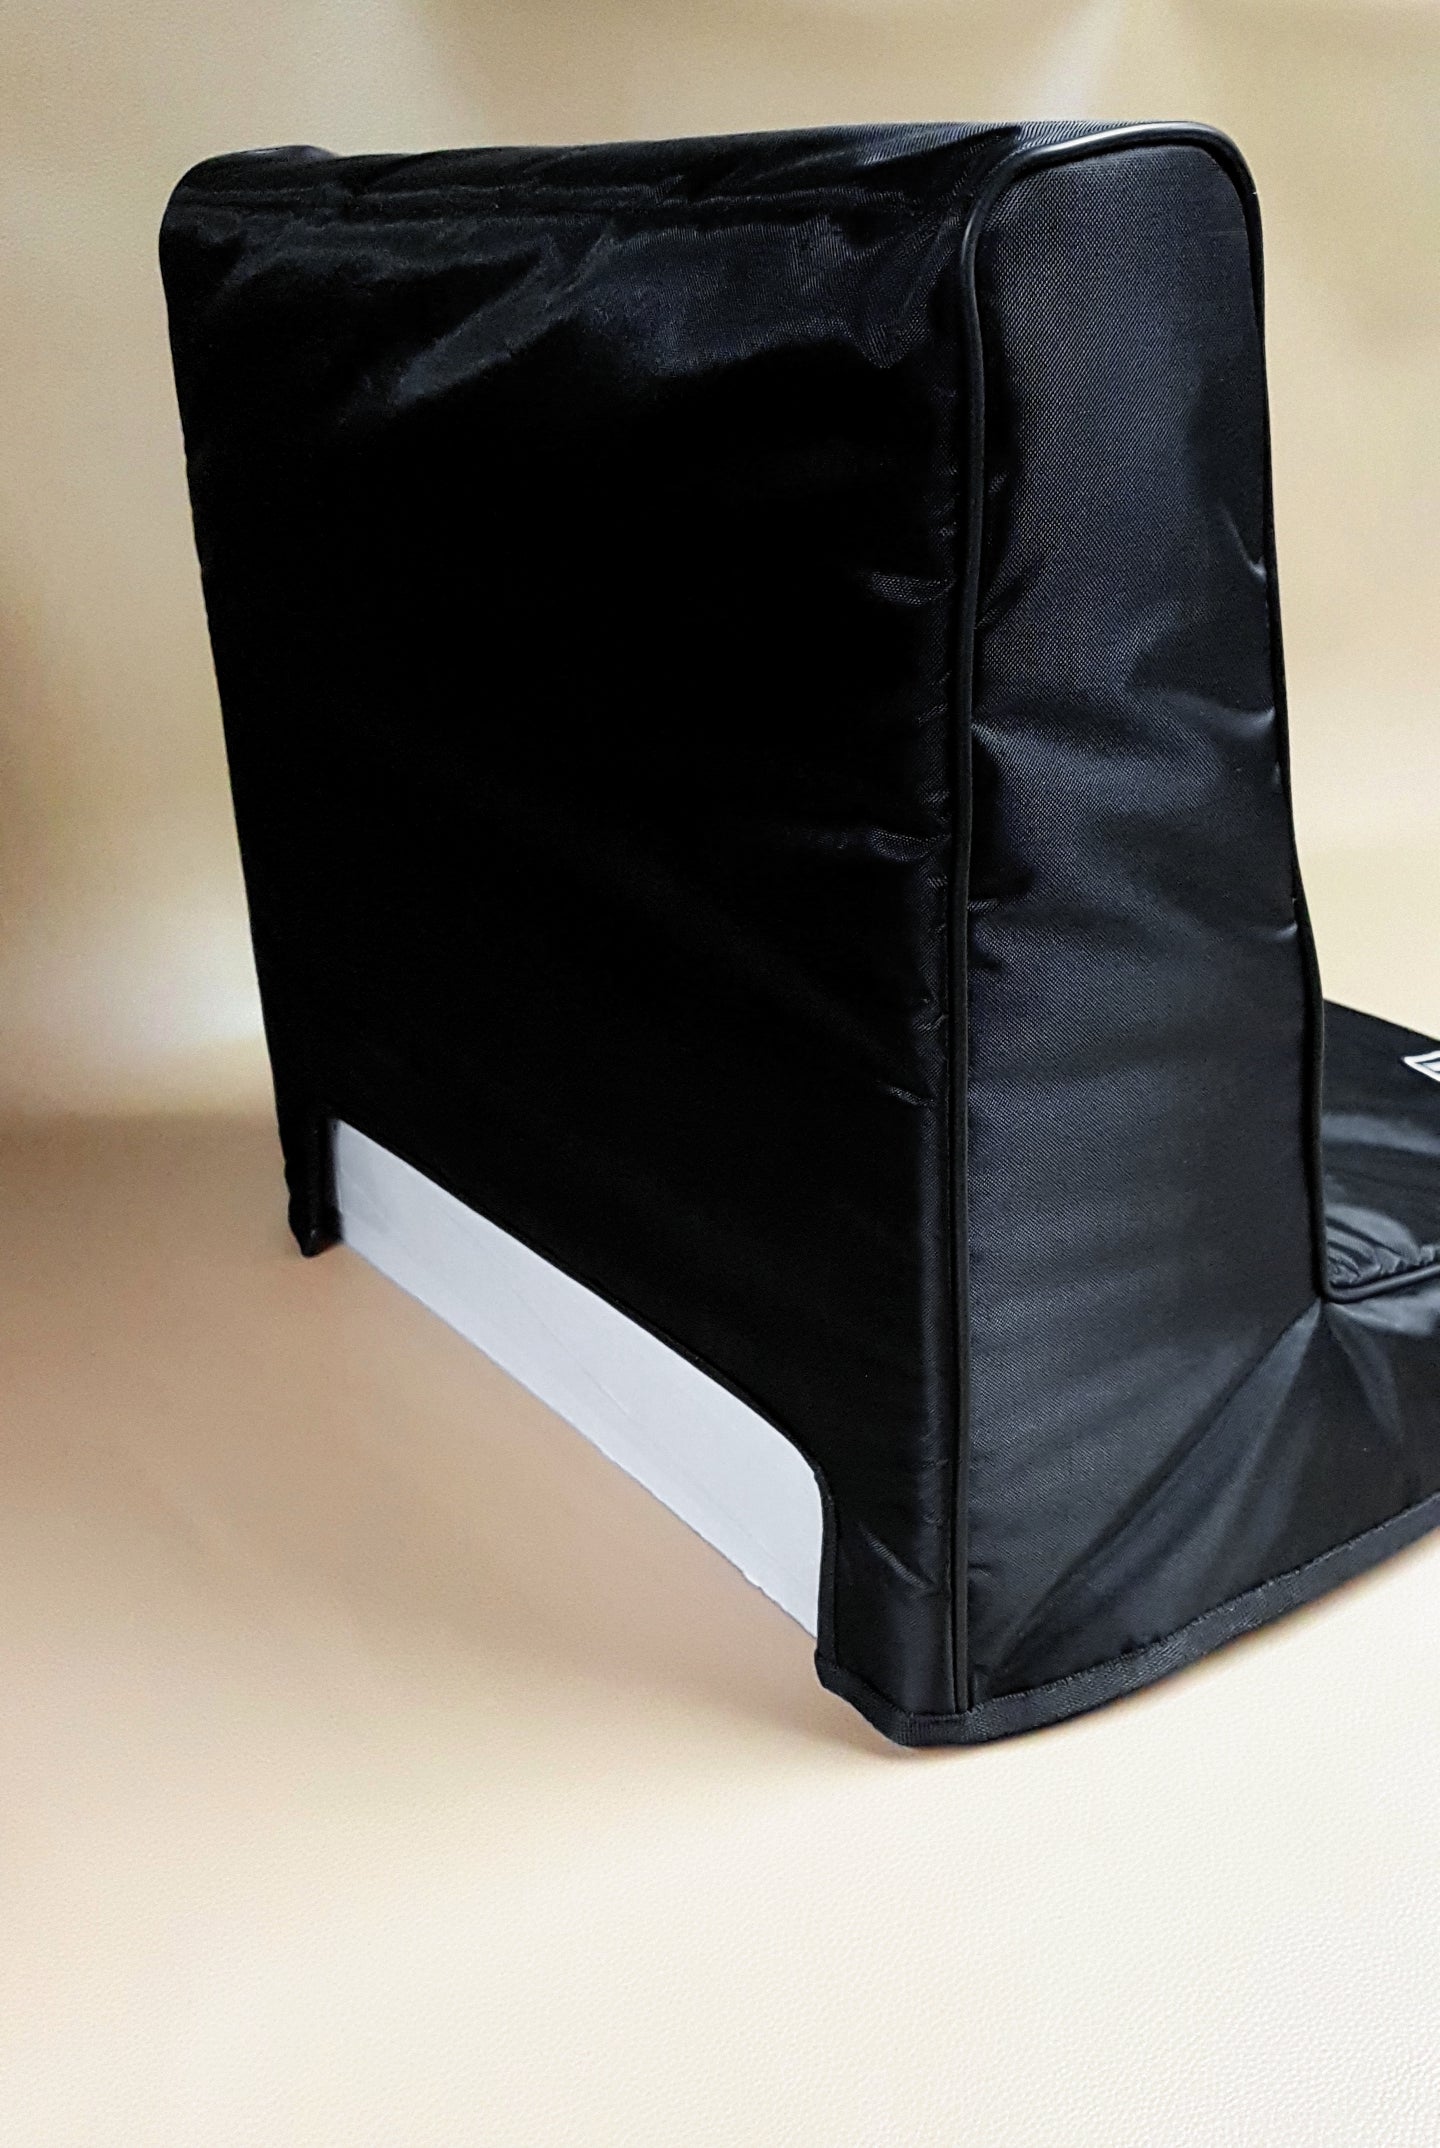 Custom padded cover for Moog Minimoog Voyager RME